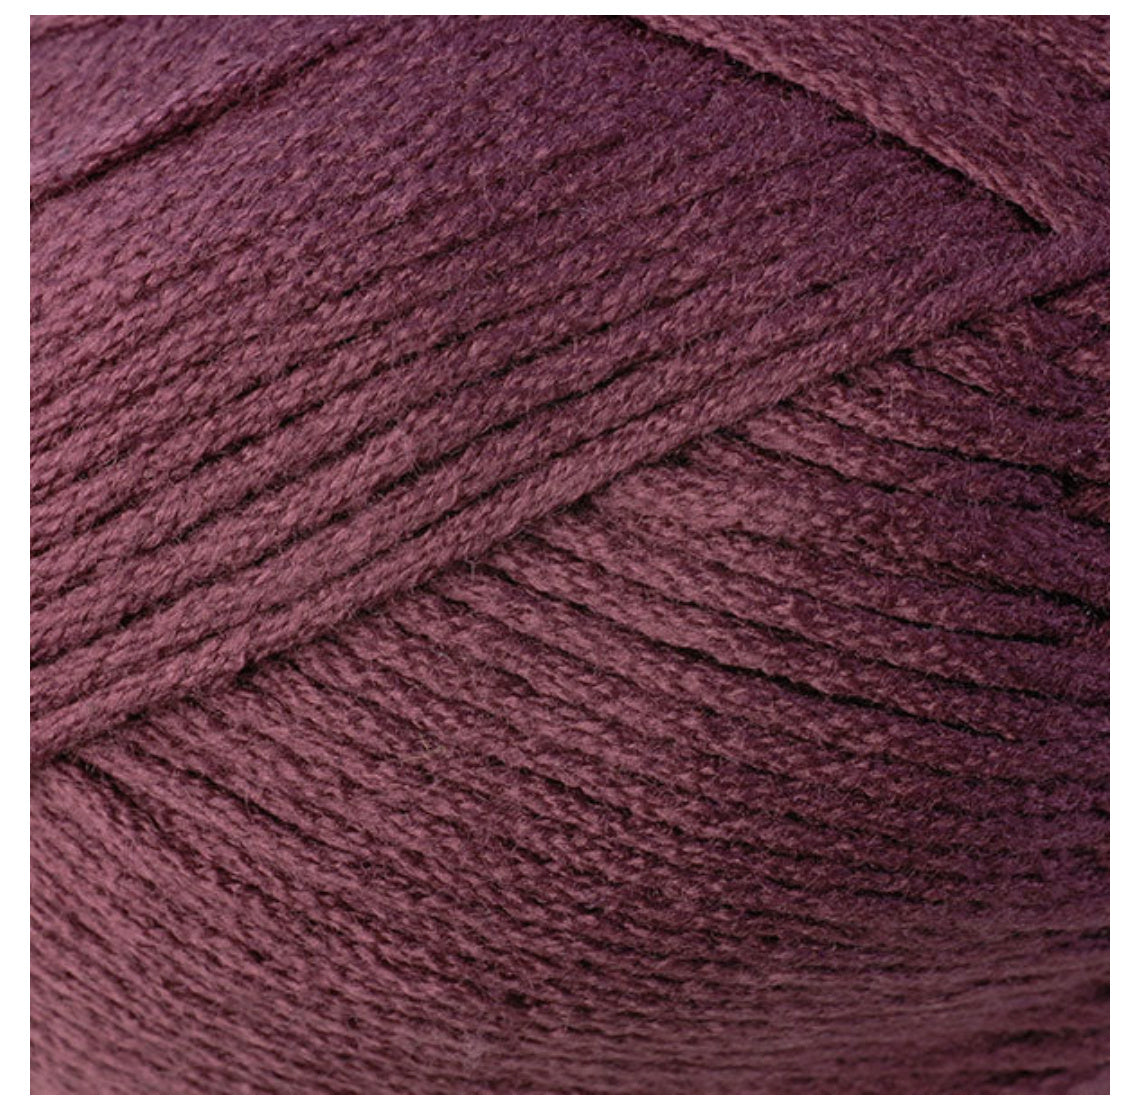 Colorful Crochet Skirt/Cowl - XS/S/M - Collegiate Crochet Kit Alternative View #3